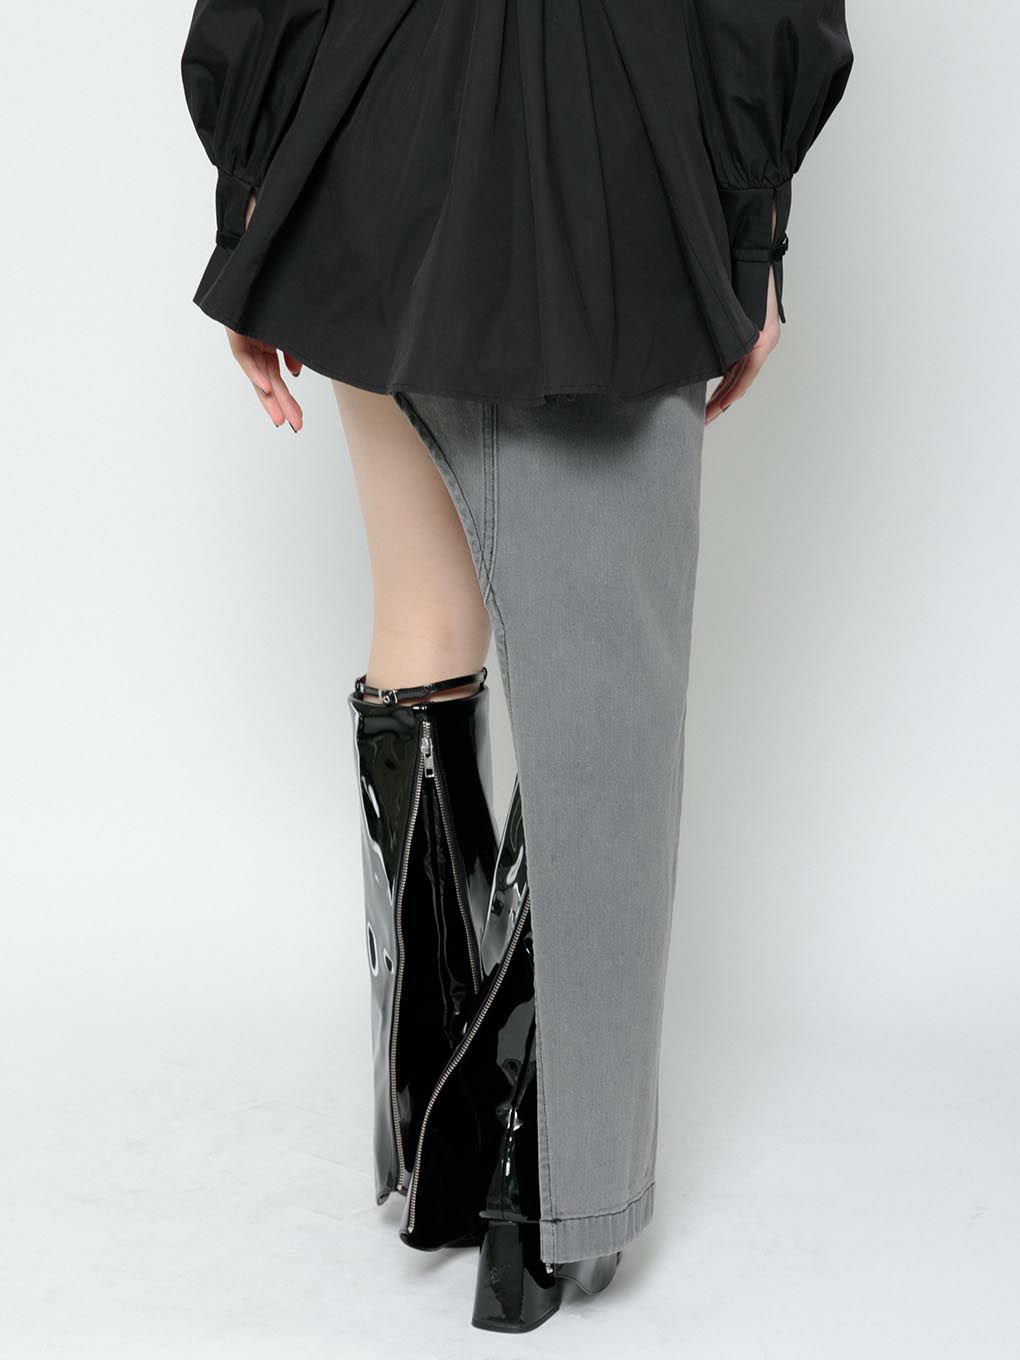 22新宿店にて購入致しましたmelt the lady moon skirt s size - スカート